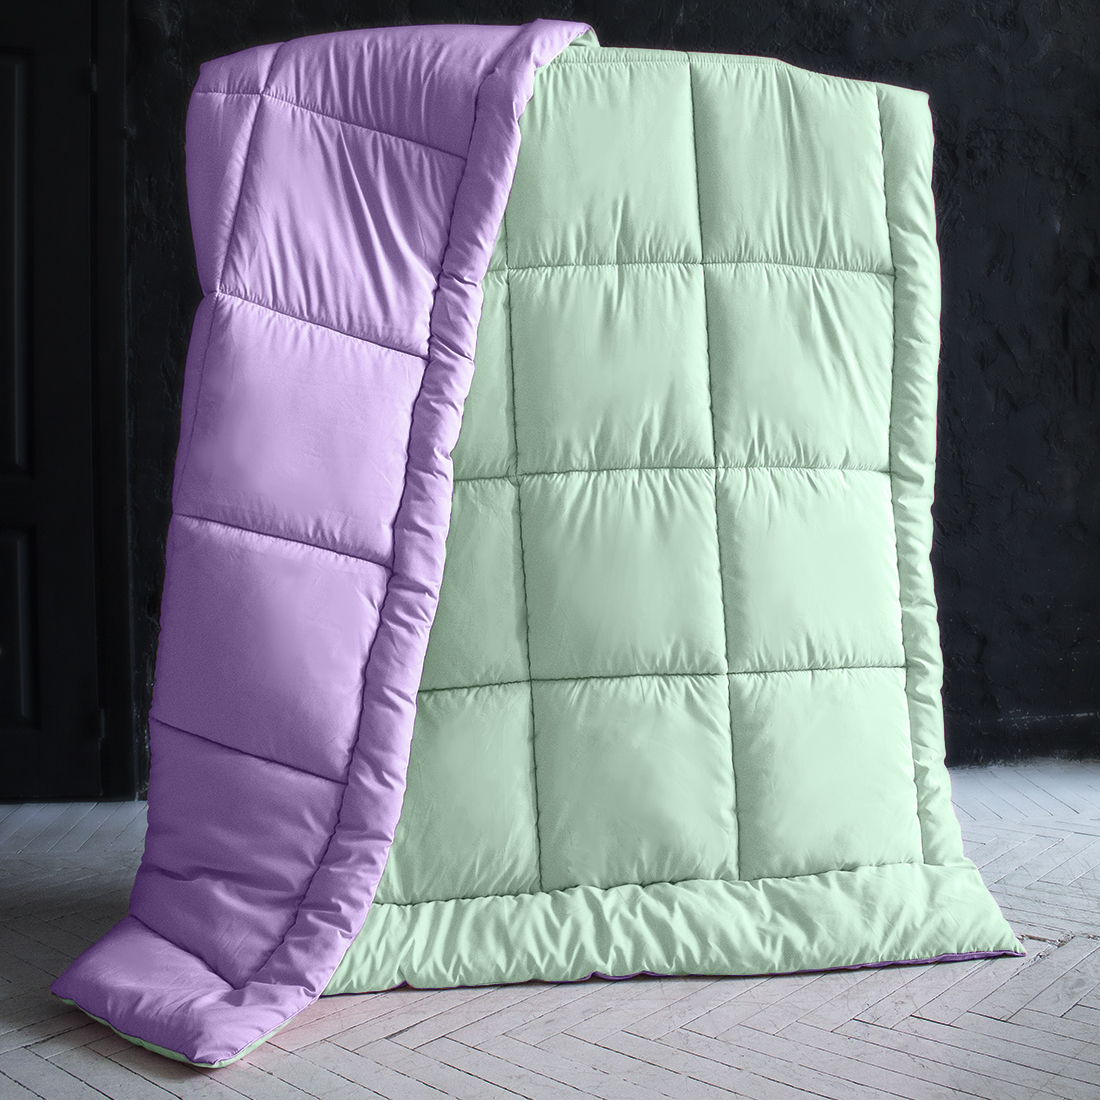 Одеяло MultiColor Цвет: Фиолетовый/Светло-Мятный (155х215 см), размер 155х215 см pva410900 Одеяло MultiColor Цвет: Фиолетовый/Светло-Мятный (155х215 см) - фото 1